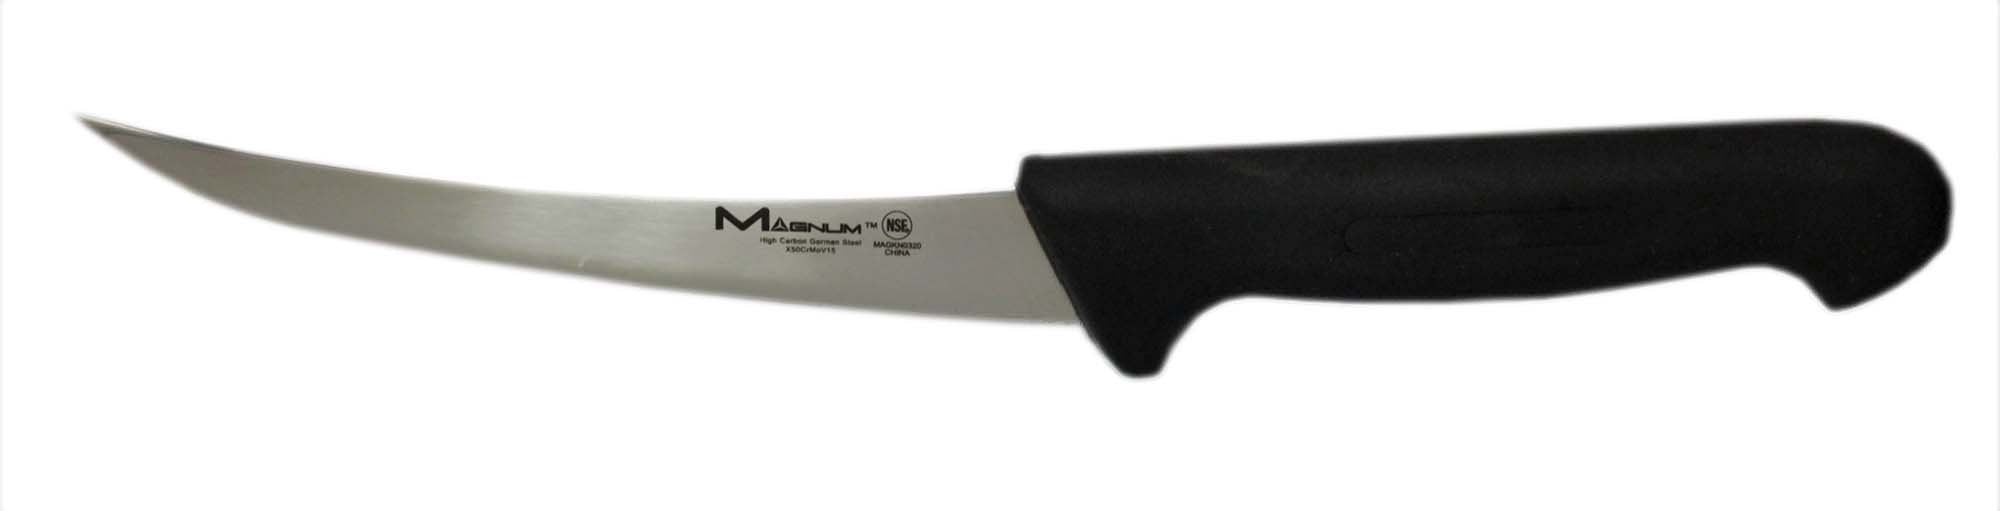 Magnum | 6" Boning Knife